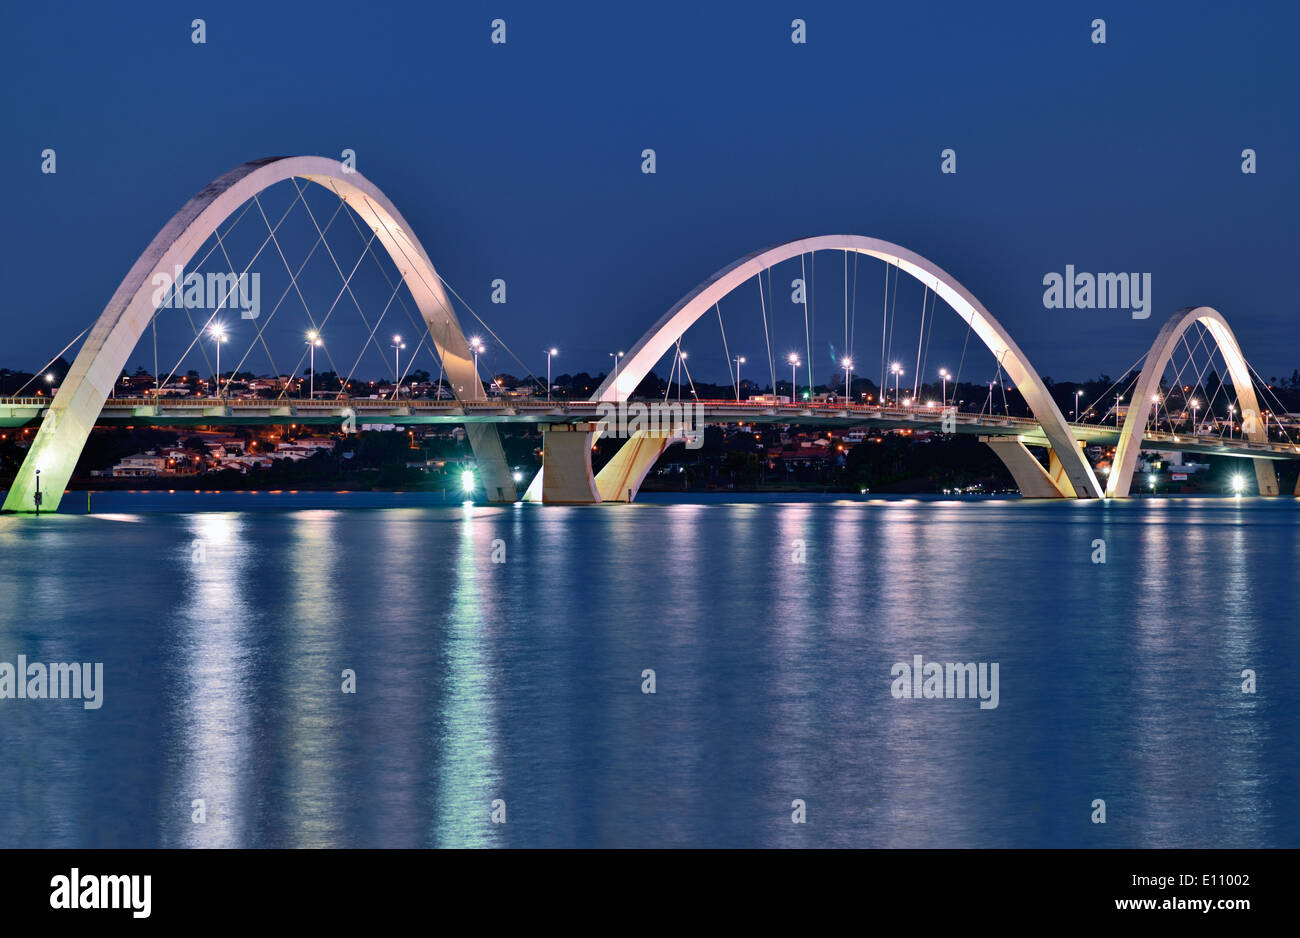 Brazil, Brasilia: Nocturnal view of the bridge Ponte JK Stock Photo